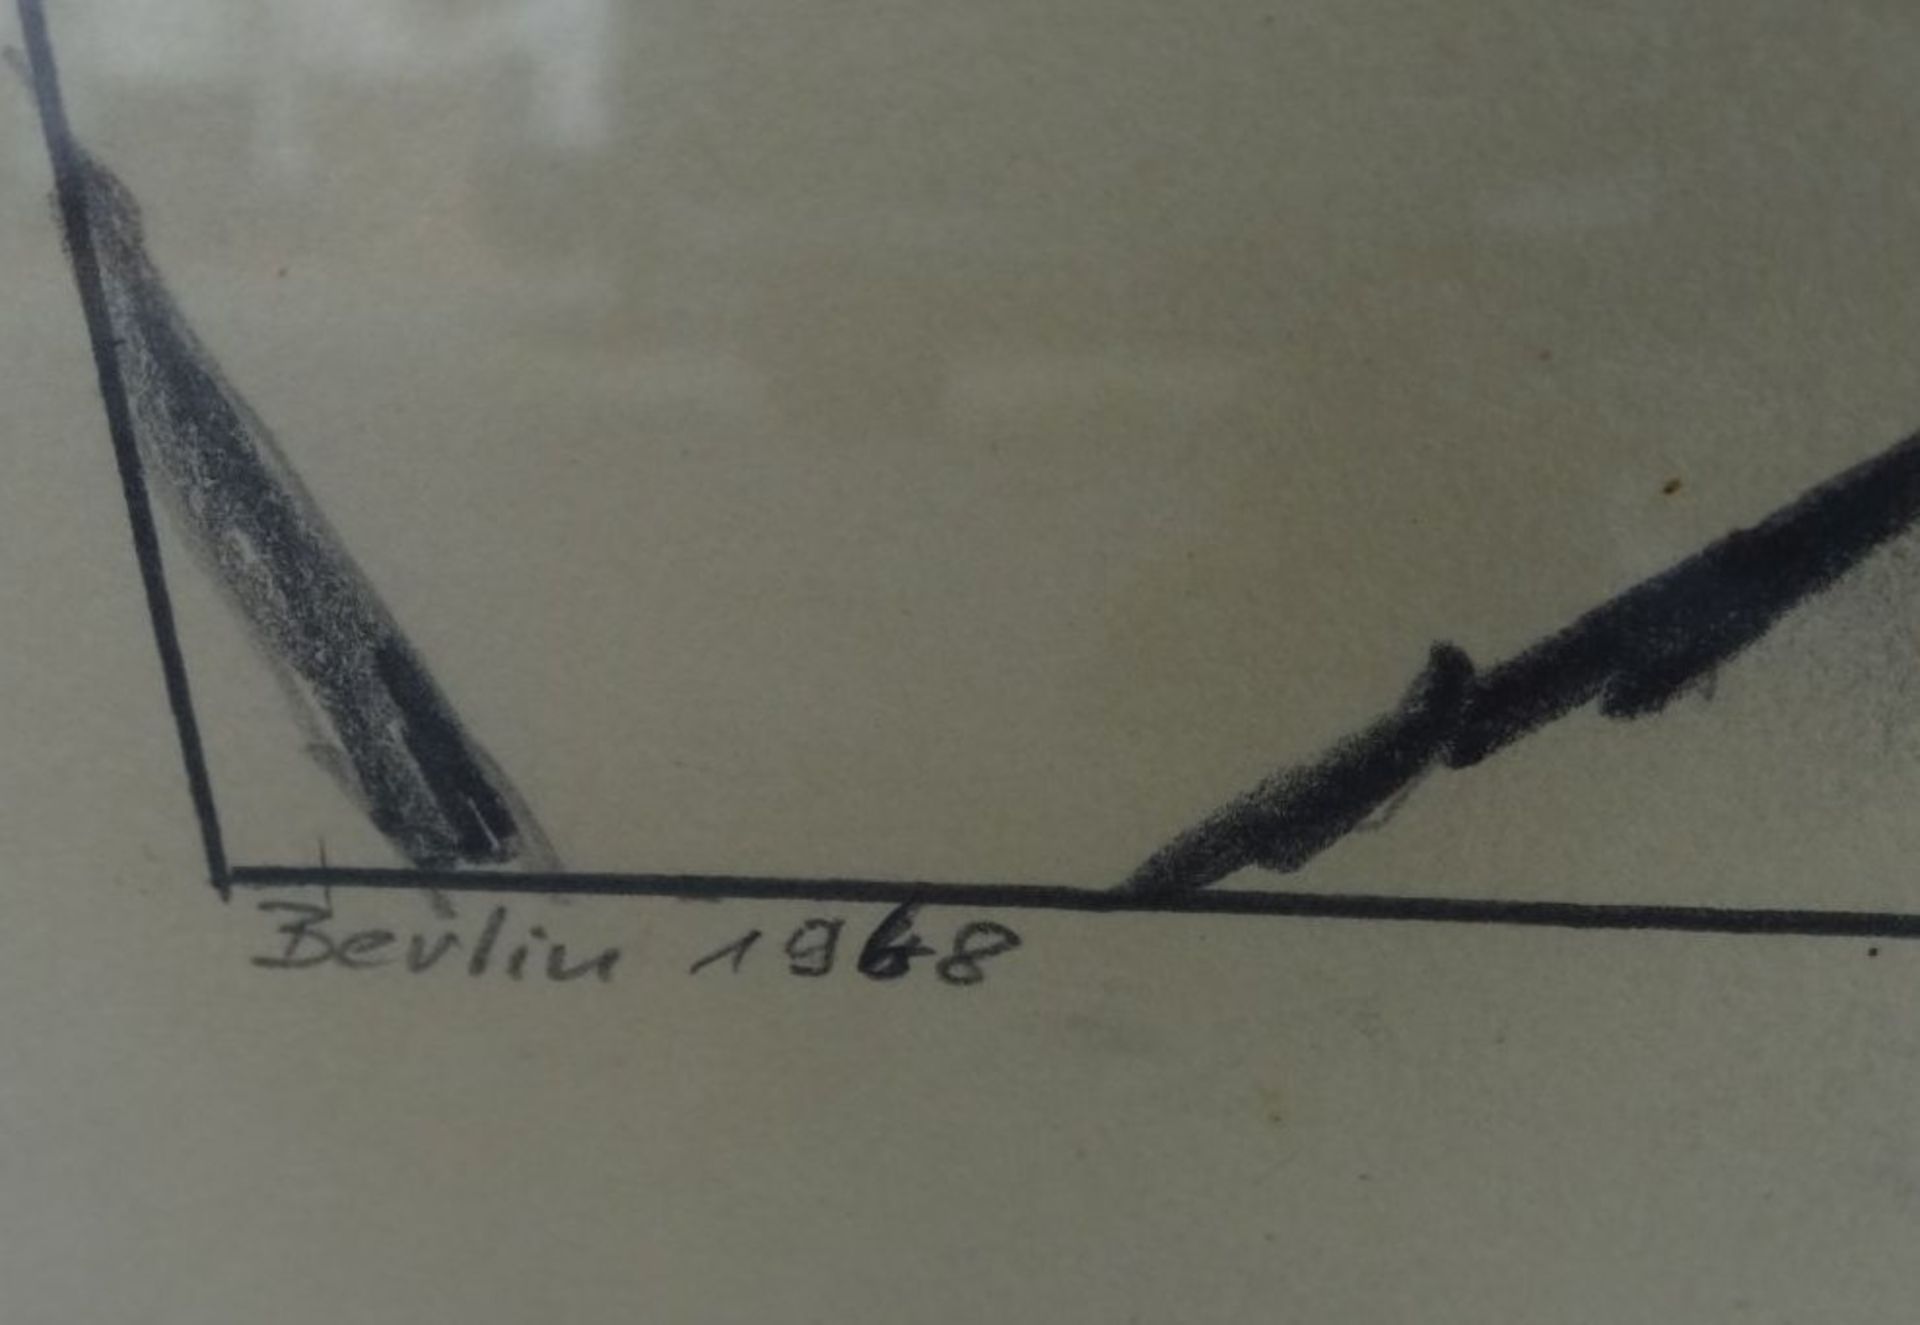 unleserl, signiert, 1975? "Studium" betitelte gr. Zeichnung, dat. 1968, ger/Glas, RG 89x68 cm - Bild 5 aus 7